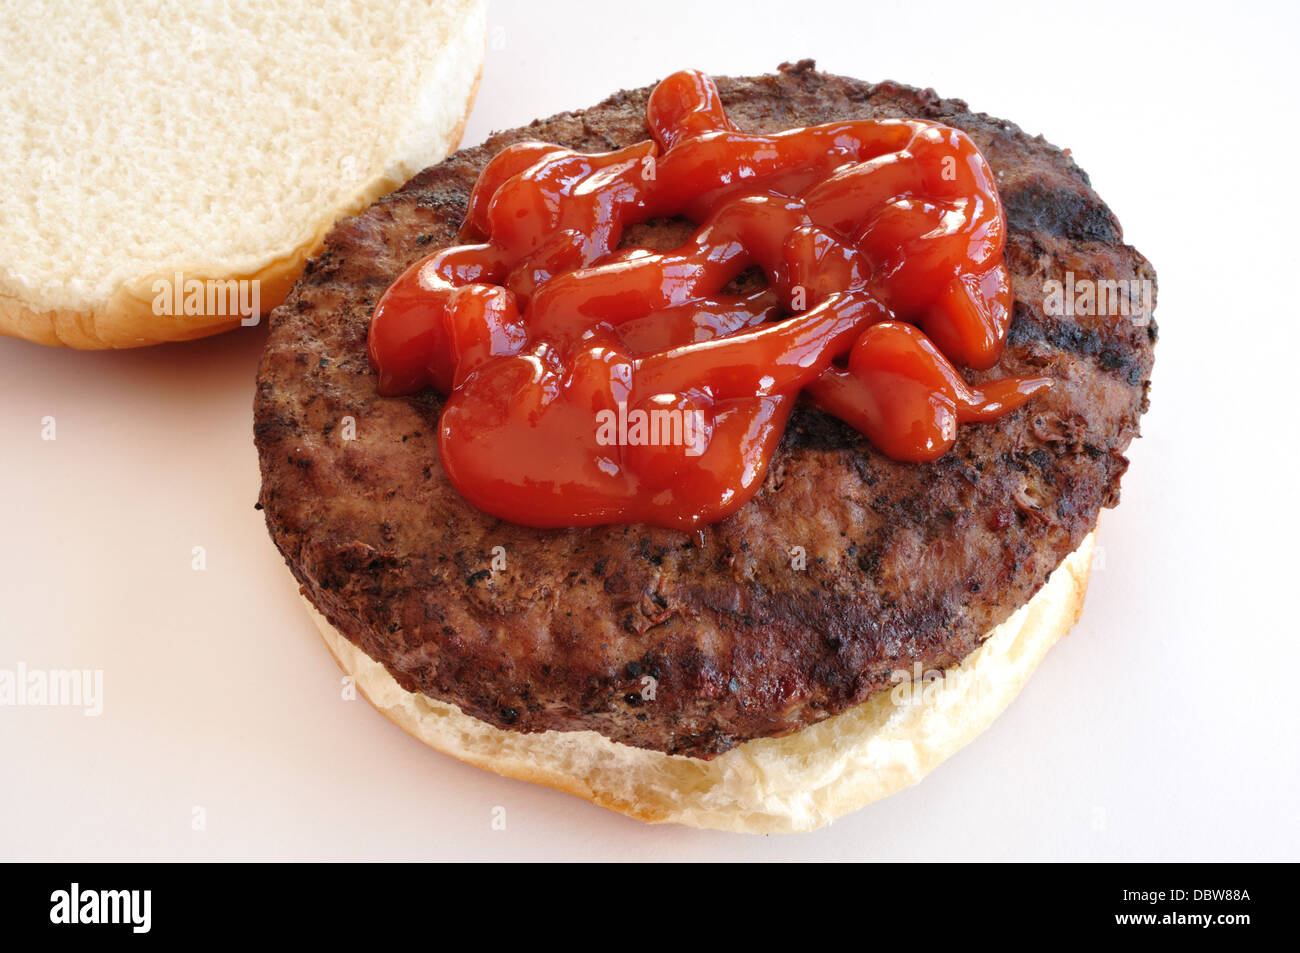 Hamburger grillé avec sauce tomate / Ketchup / Ketchup sur un petit pain / bap Banque D'Images